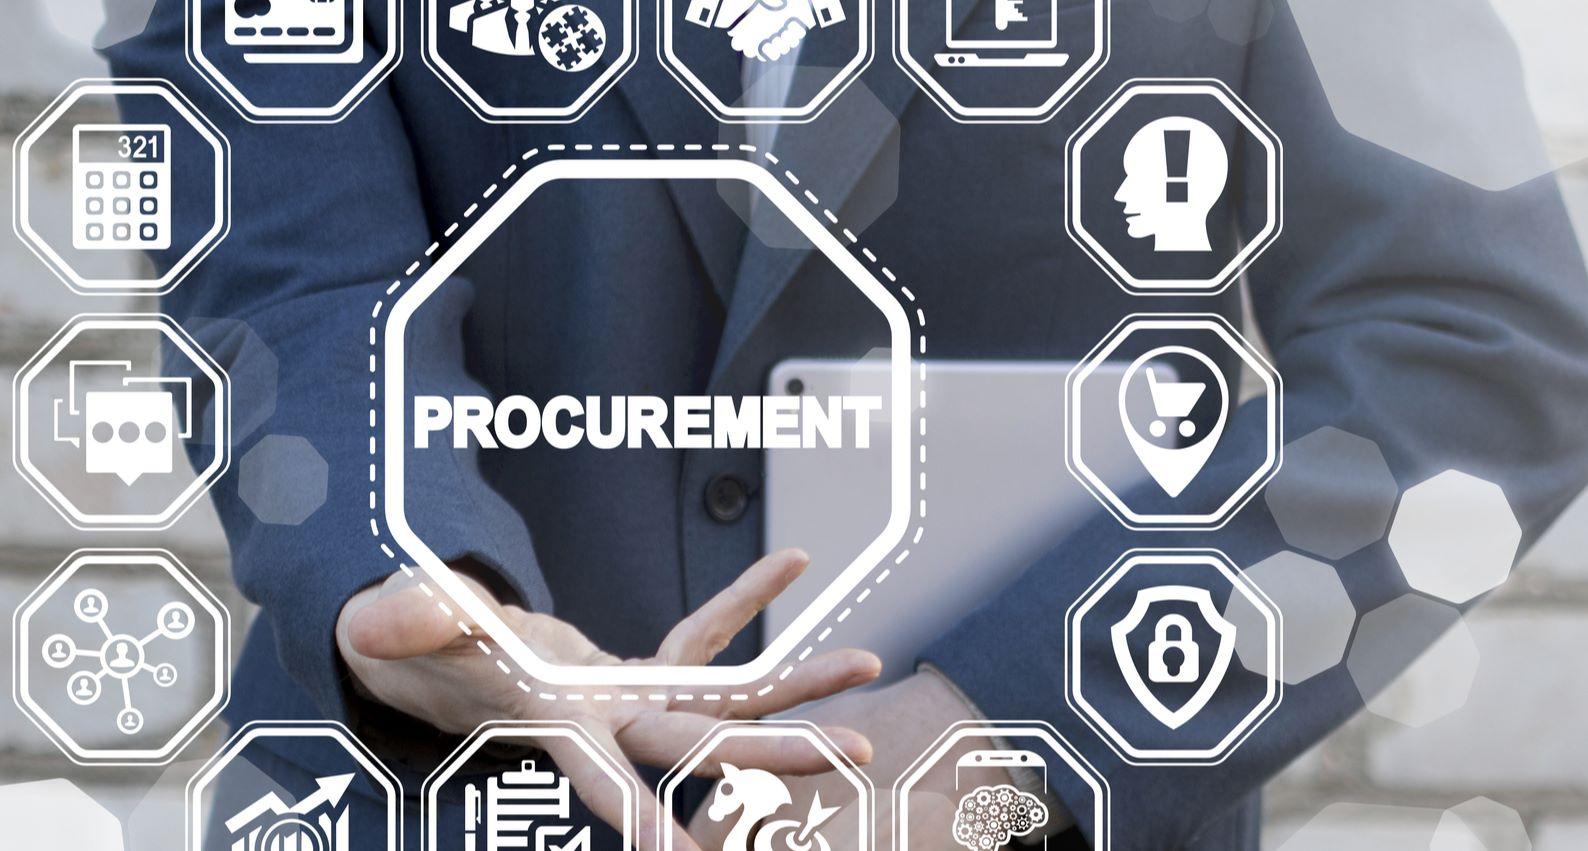 e-procurement market